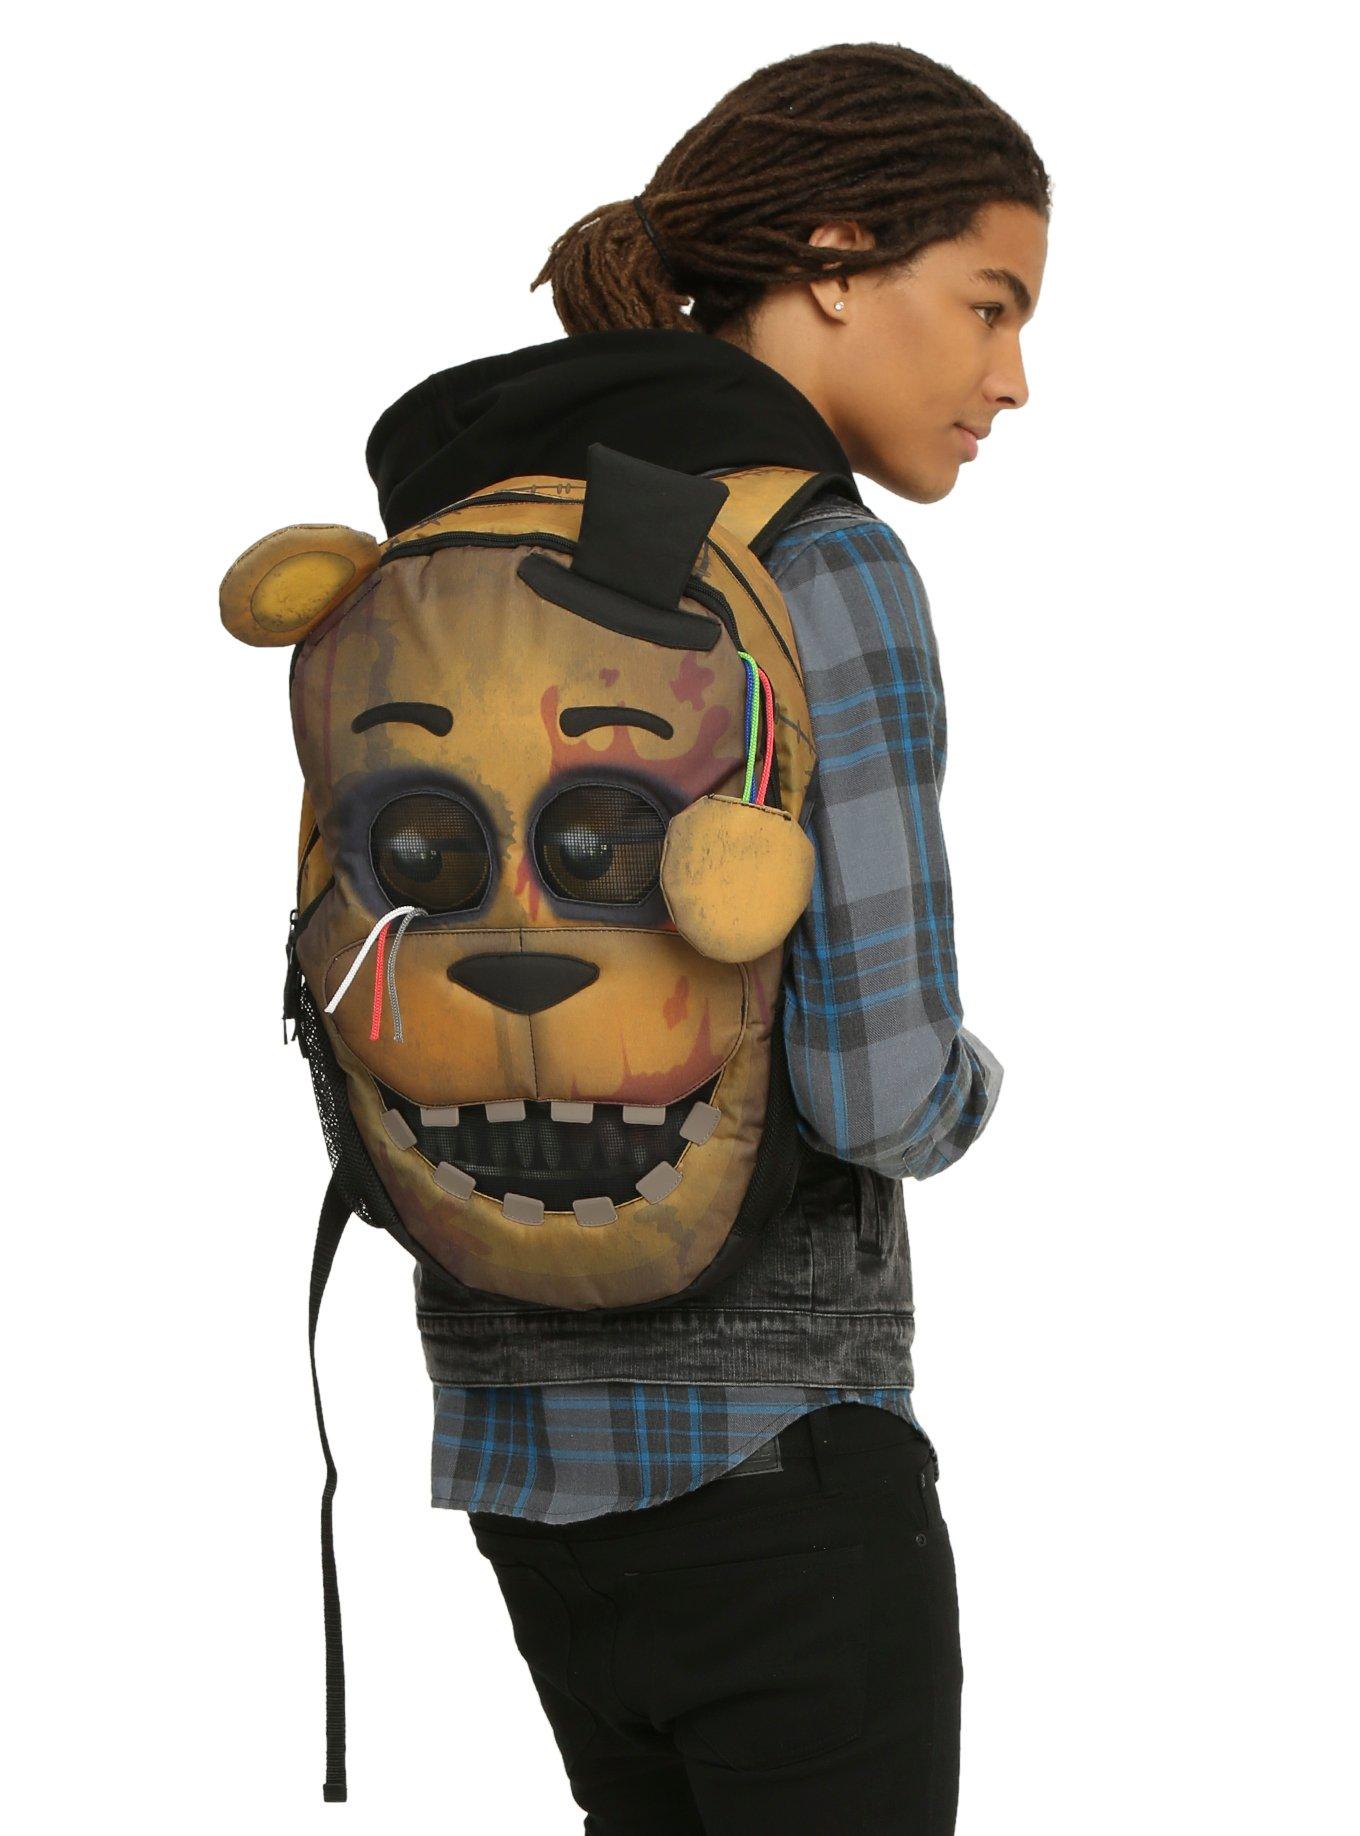 Five Nights At Freddy's Freddy Backpack Shoulder Bag